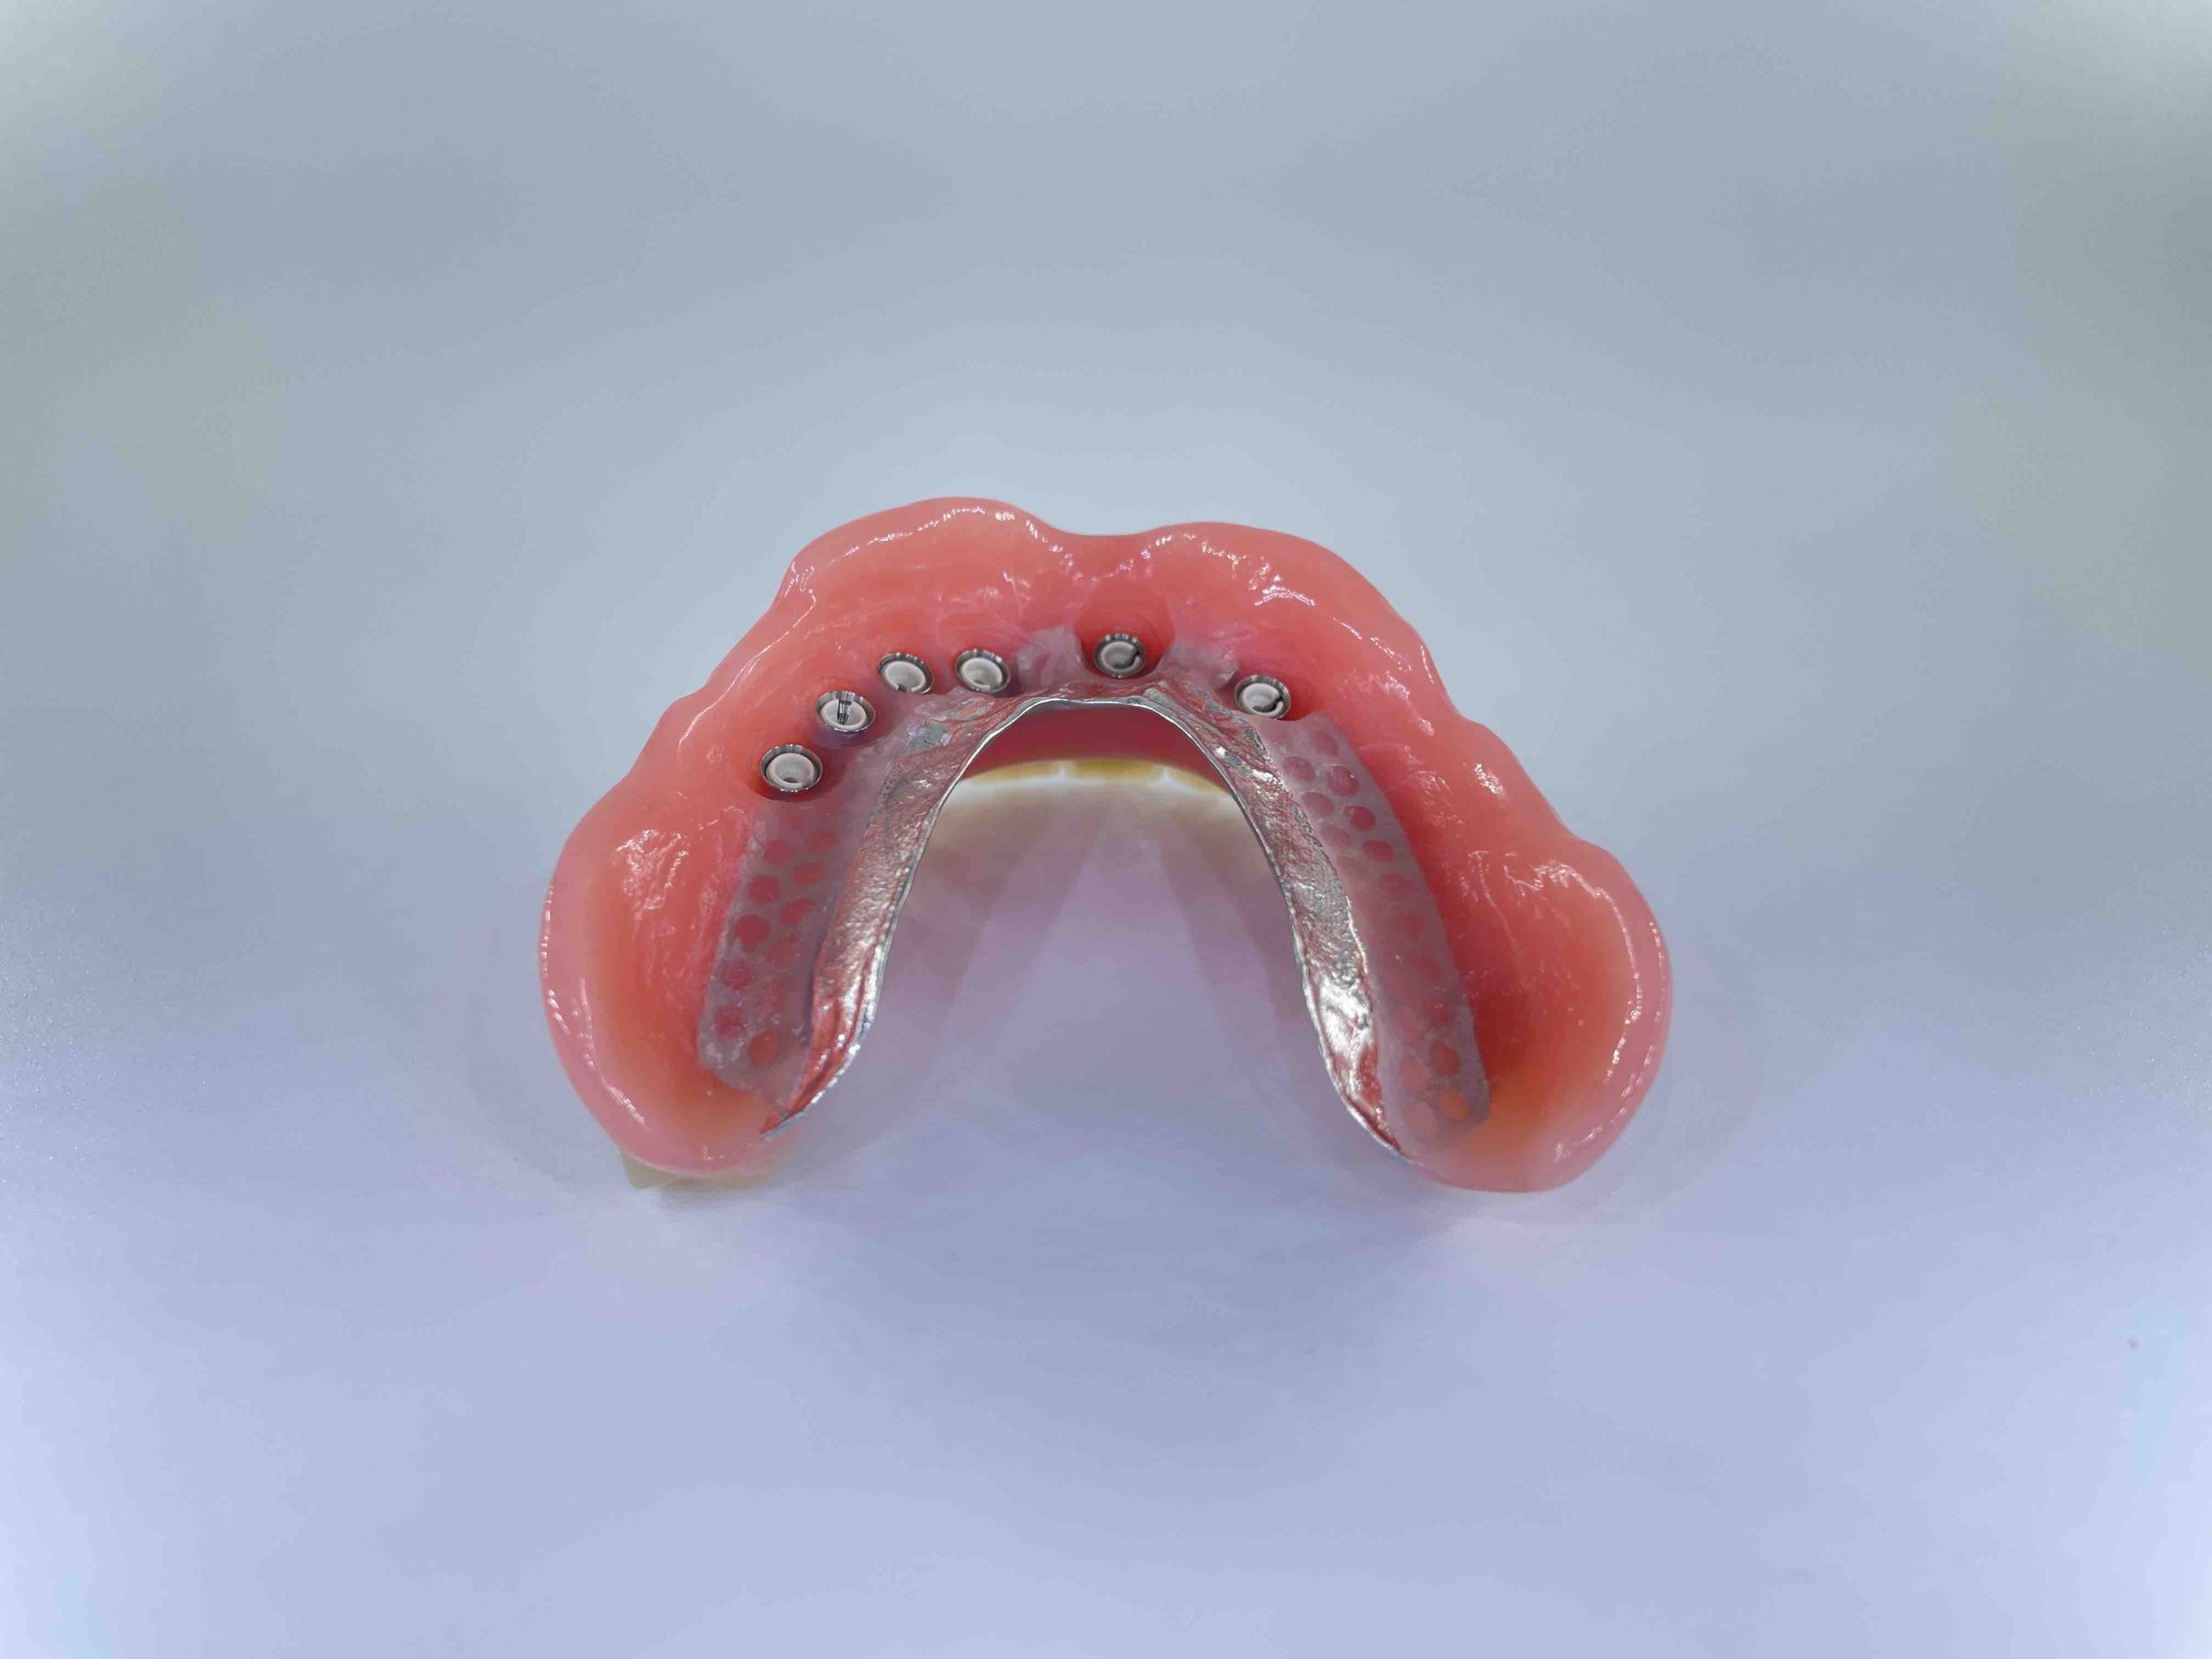 hybrid tandprotese til overmund bagfra Resultater af færdigeproduceret tandproteser